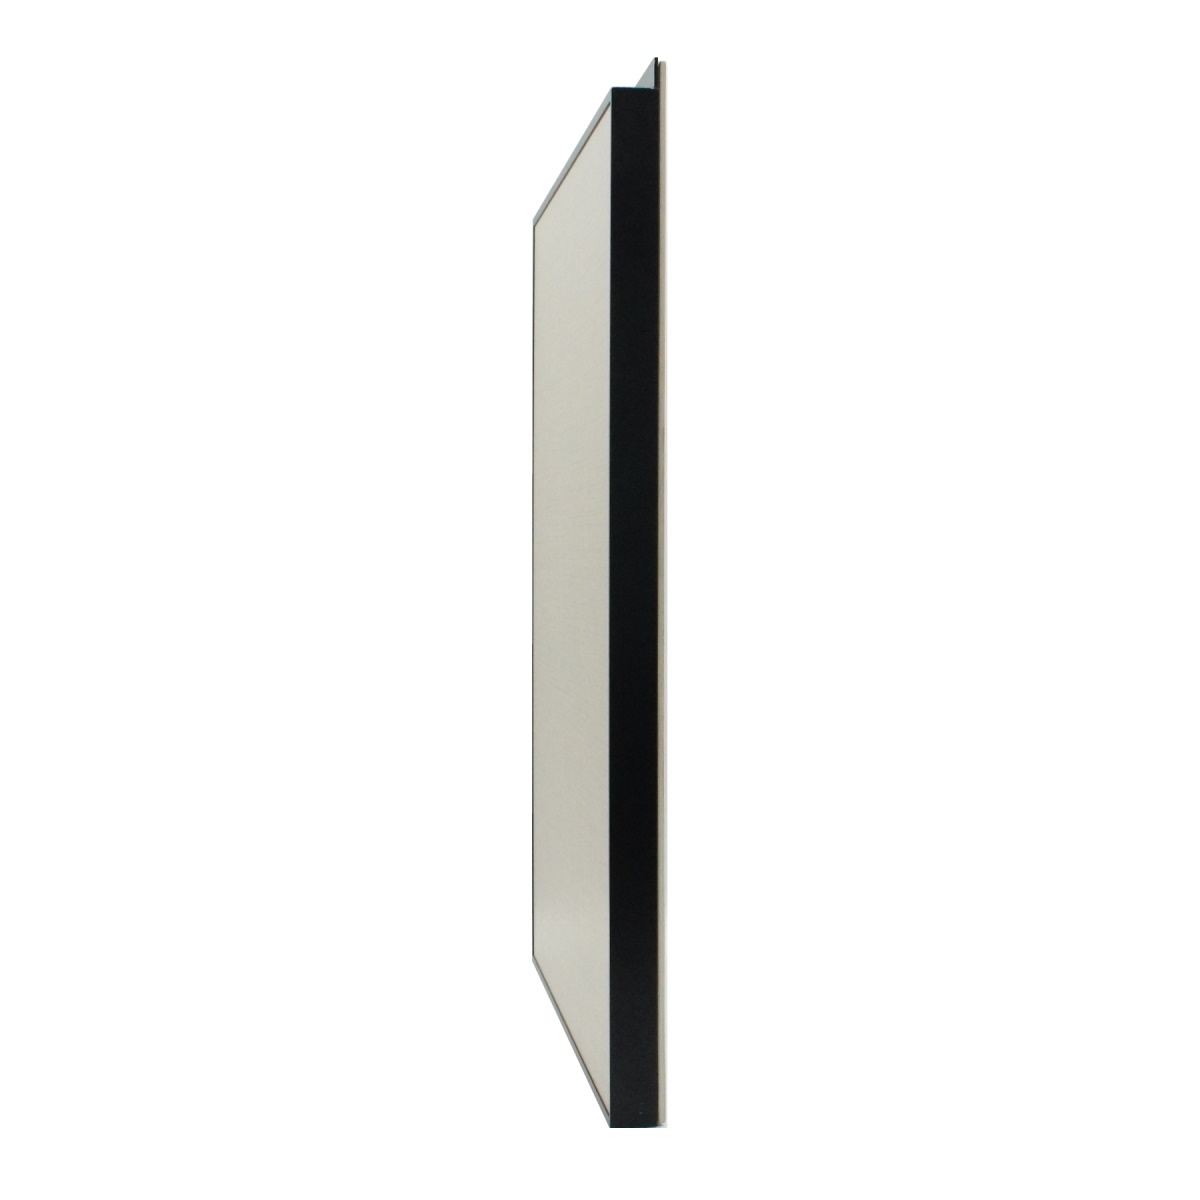 Профиль фасадный под керамику с ручкой 2740мм, черный (алюминий)